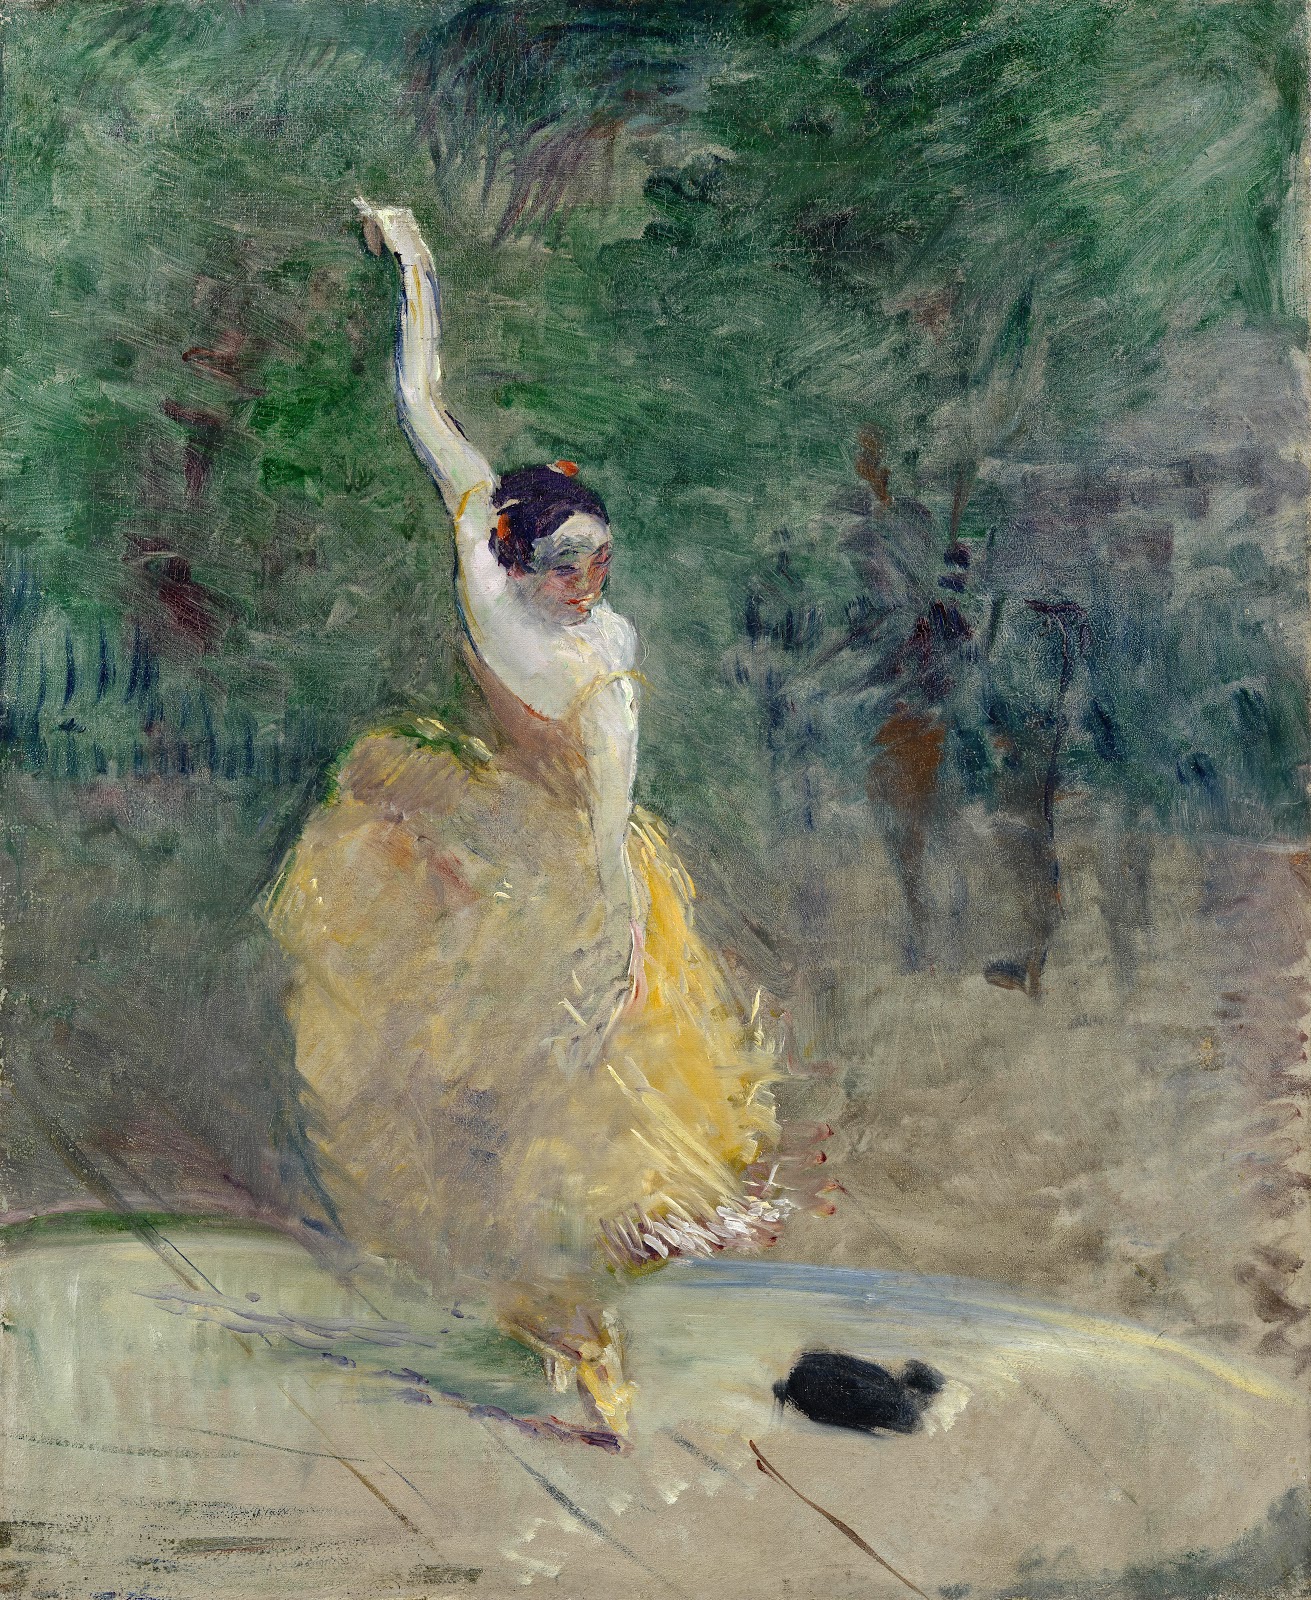 Henri+de+Toulouse+Lautrec-1864-1901 (109).jpg